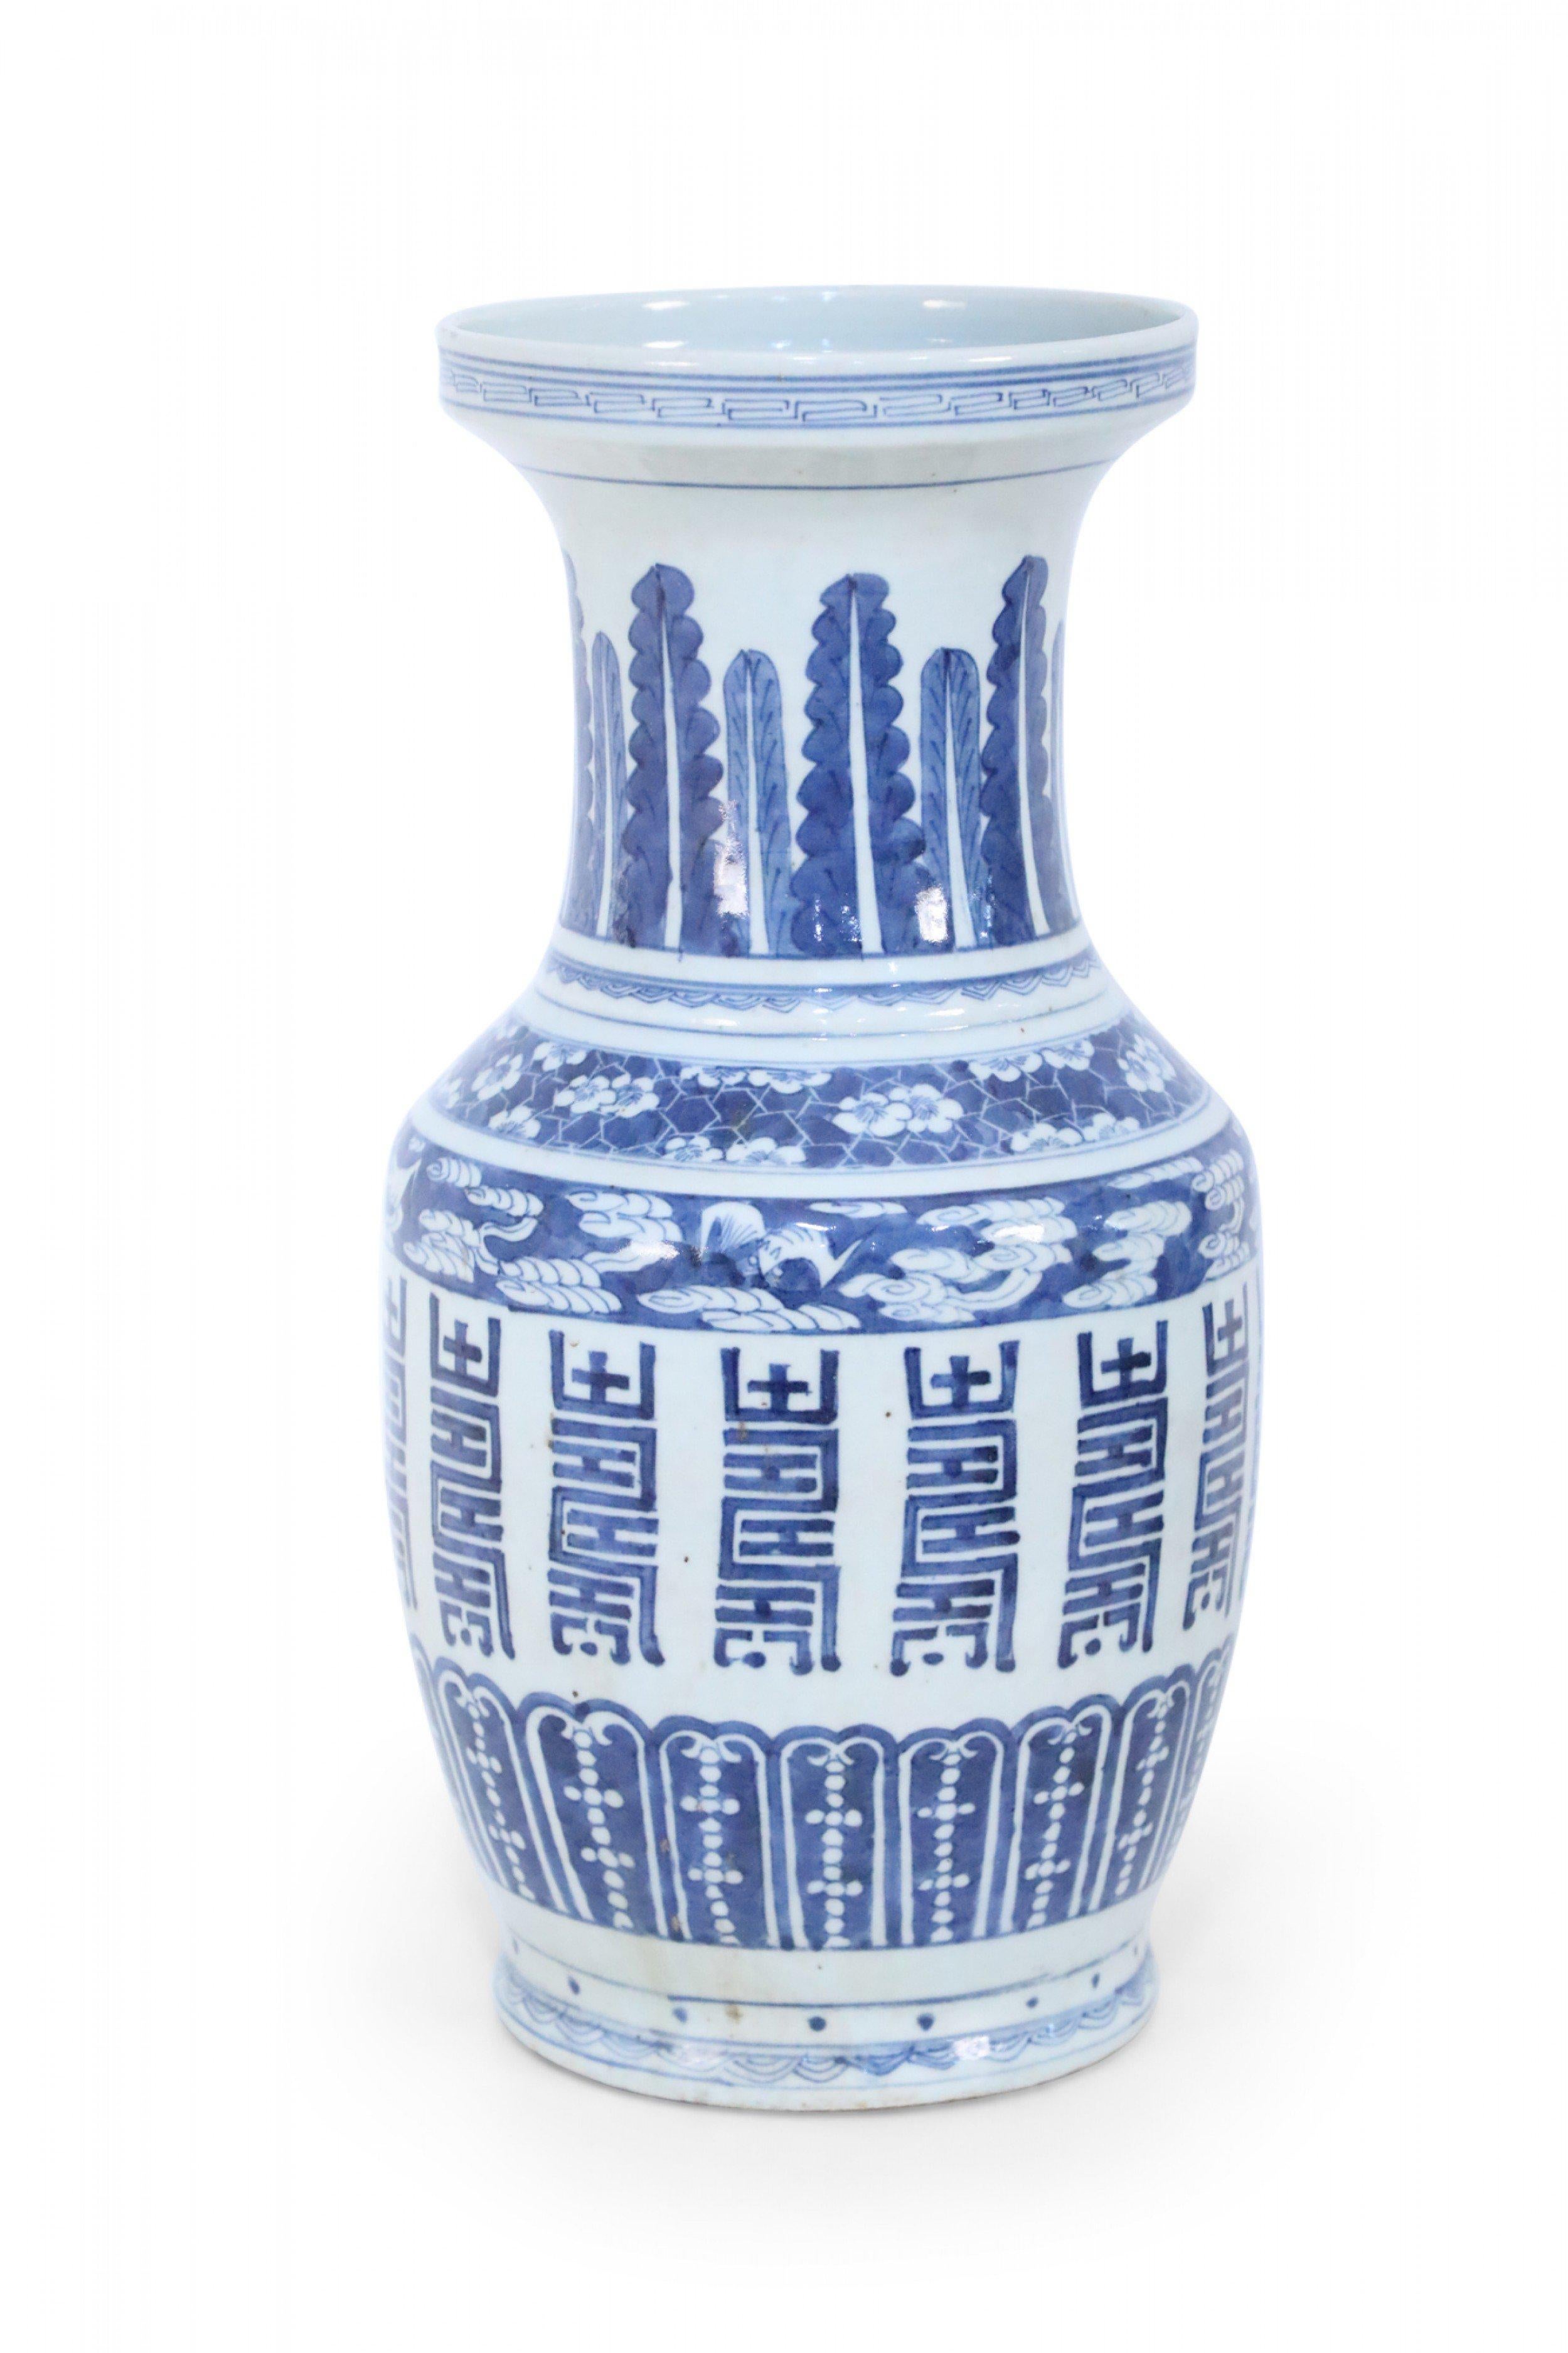 Urne en porcelaine blanche chinoise peinte d'une variété de motifs bleus et décoratifs, notamment des plumes et des marques verticales audacieuses, qui sont proportionnellement équilibrés pour créer un design harmonieux.
     